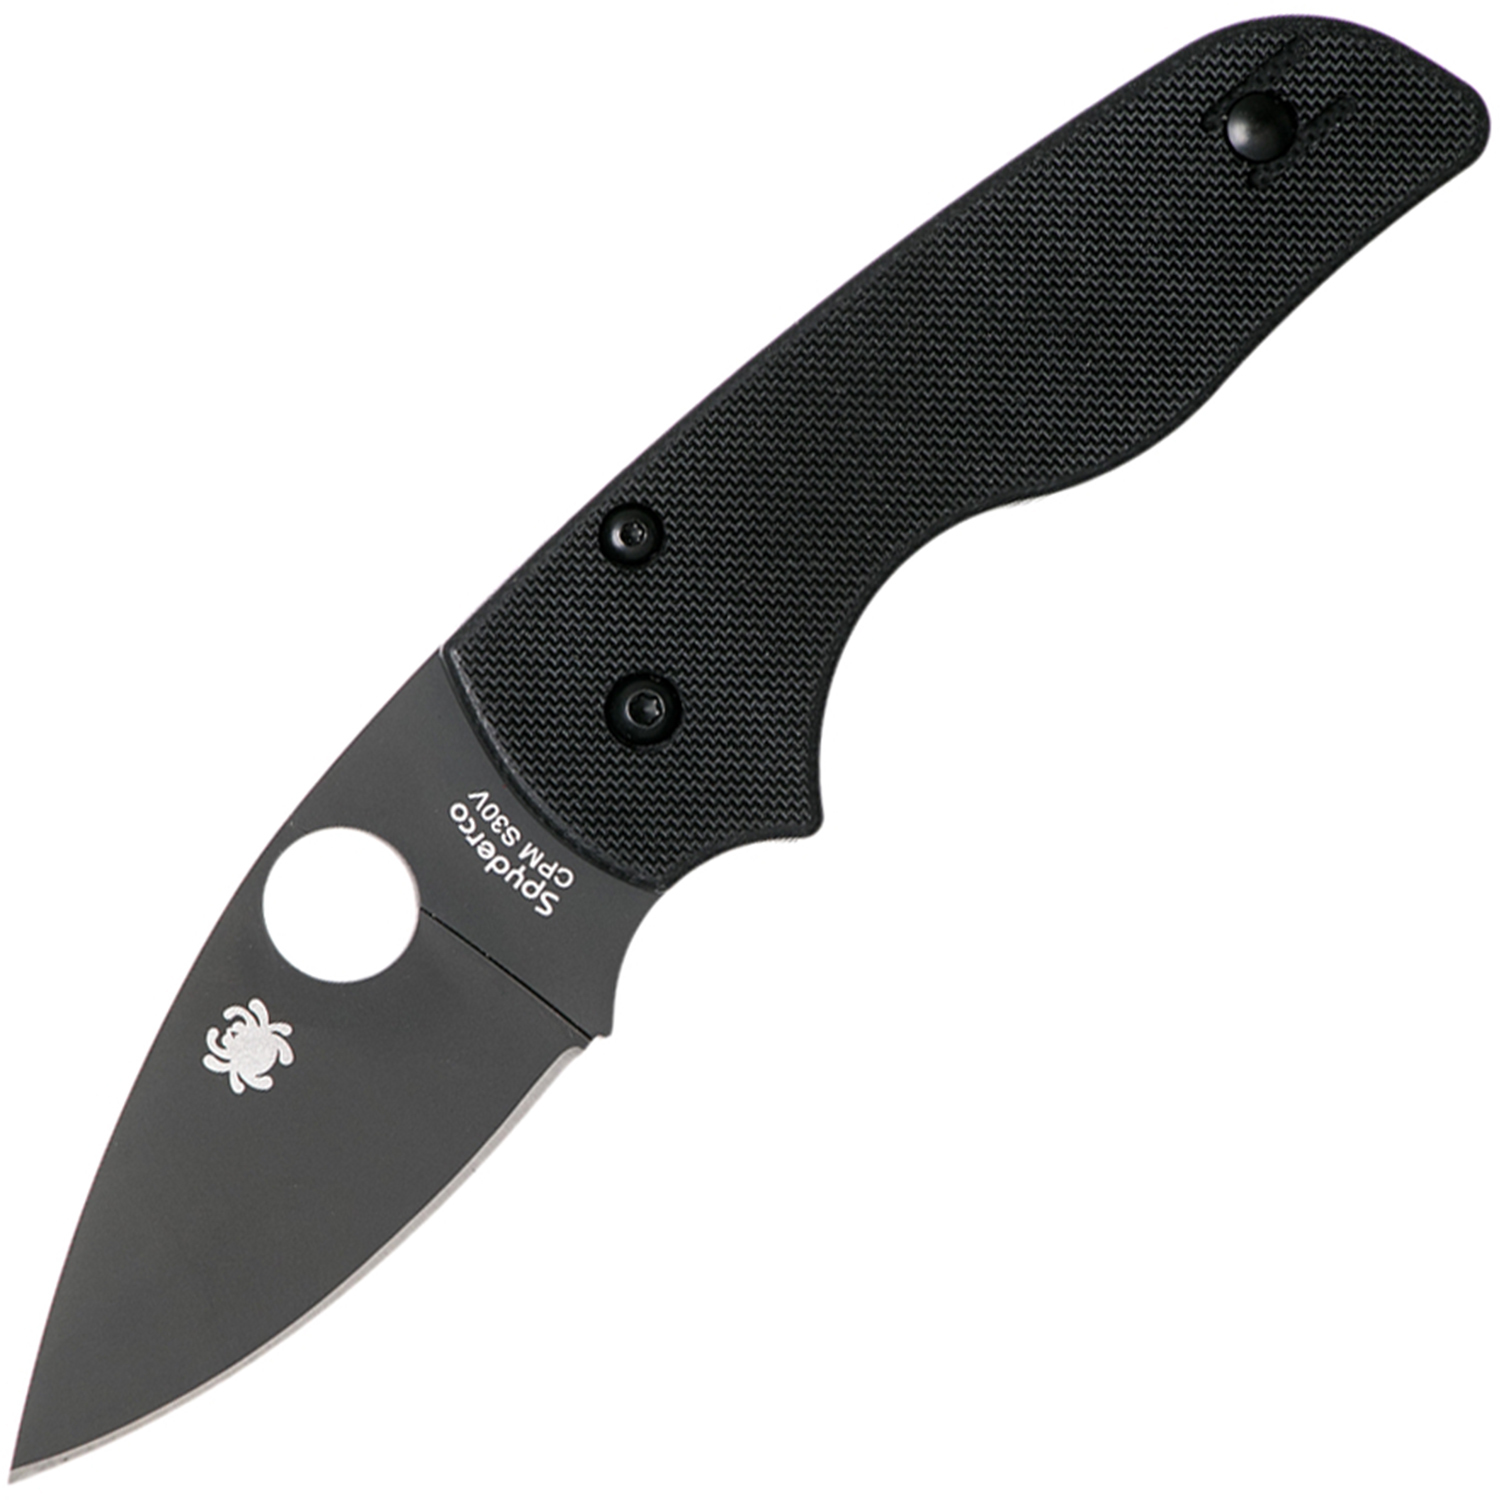 Нож складной Lil' Native - Spyderco 230GPBBK, сталь Crucible CPM® S30V™ DLC Coated Plain, рукоять стеклотекстолит G10, чёрный